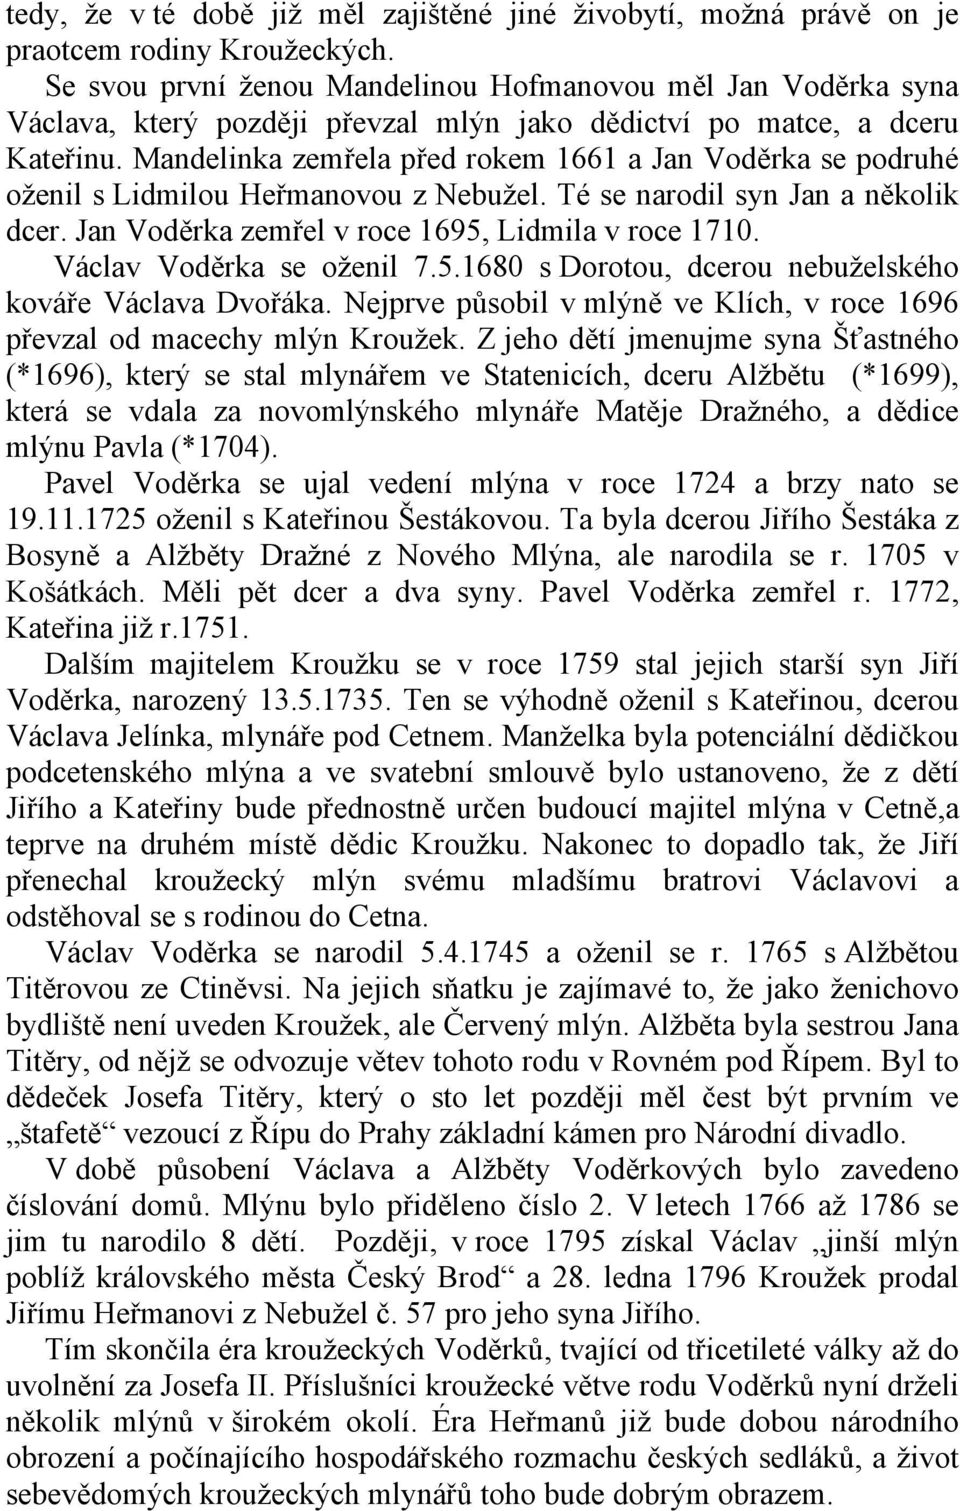 Mandelinka zemřela před rokem 1661 a Jan Voděrka se podruhé oženil s Lidmilou Heřmanovou z Nebužel. Té se narodil syn Jan a několik dcer. Jan Voděrka zemřel v roce 1695, Lidmila v roce 1710.